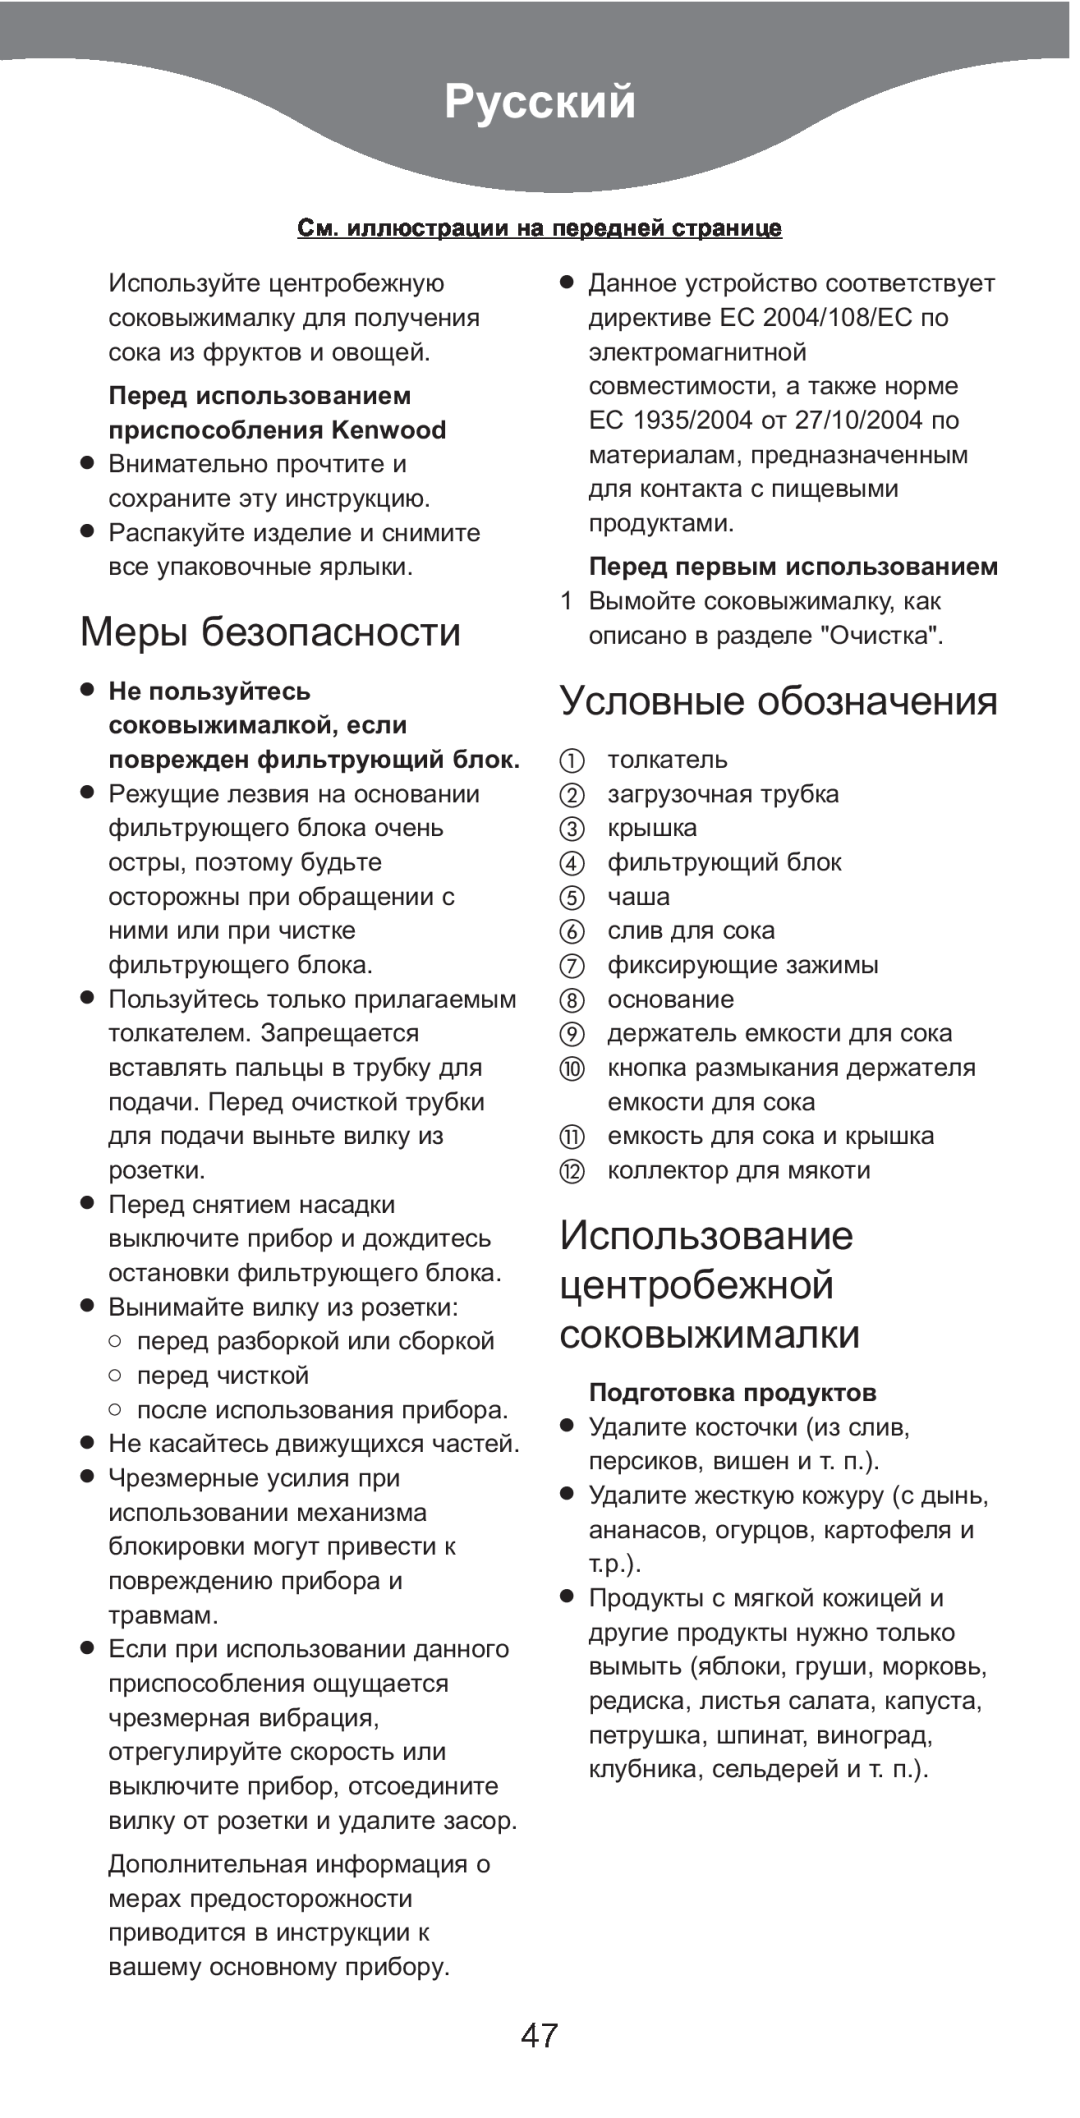 Kenwood AT641 manual Русский, Меры безопасности, Условные обозначения, Использование центробежной соковыжималки 